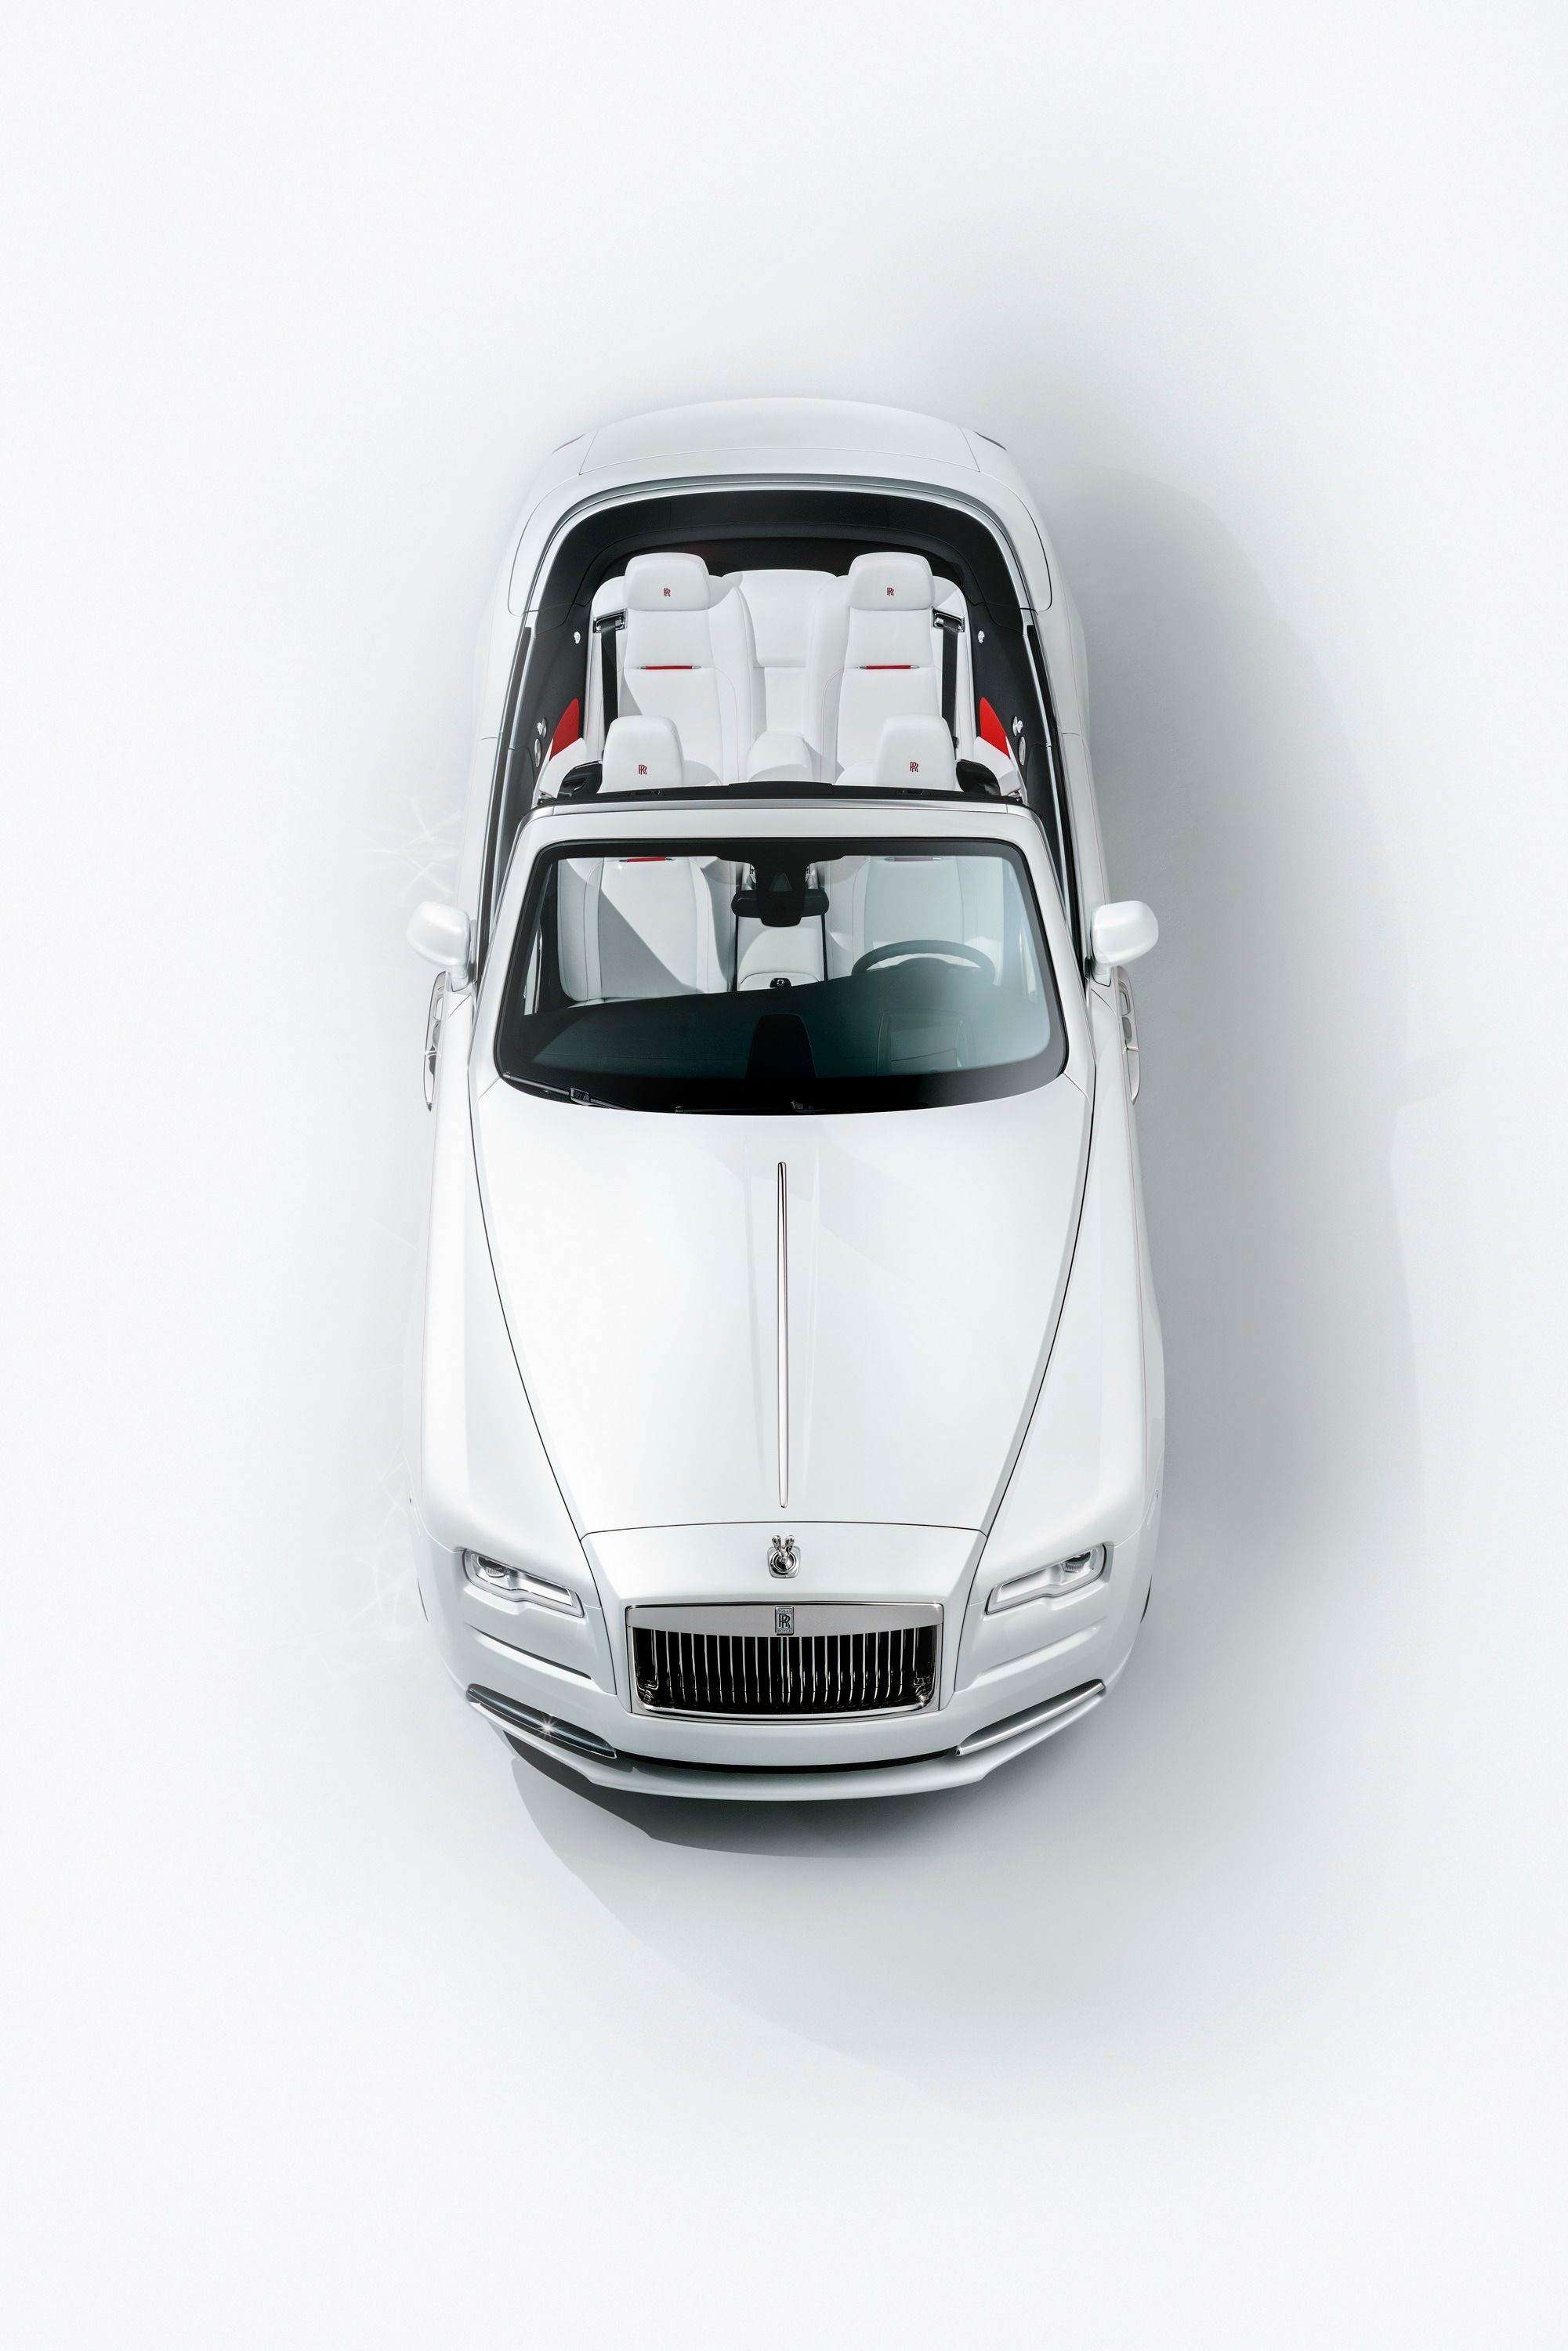 2017 Rolls Royce Dawn Inspired by Fashion Edition